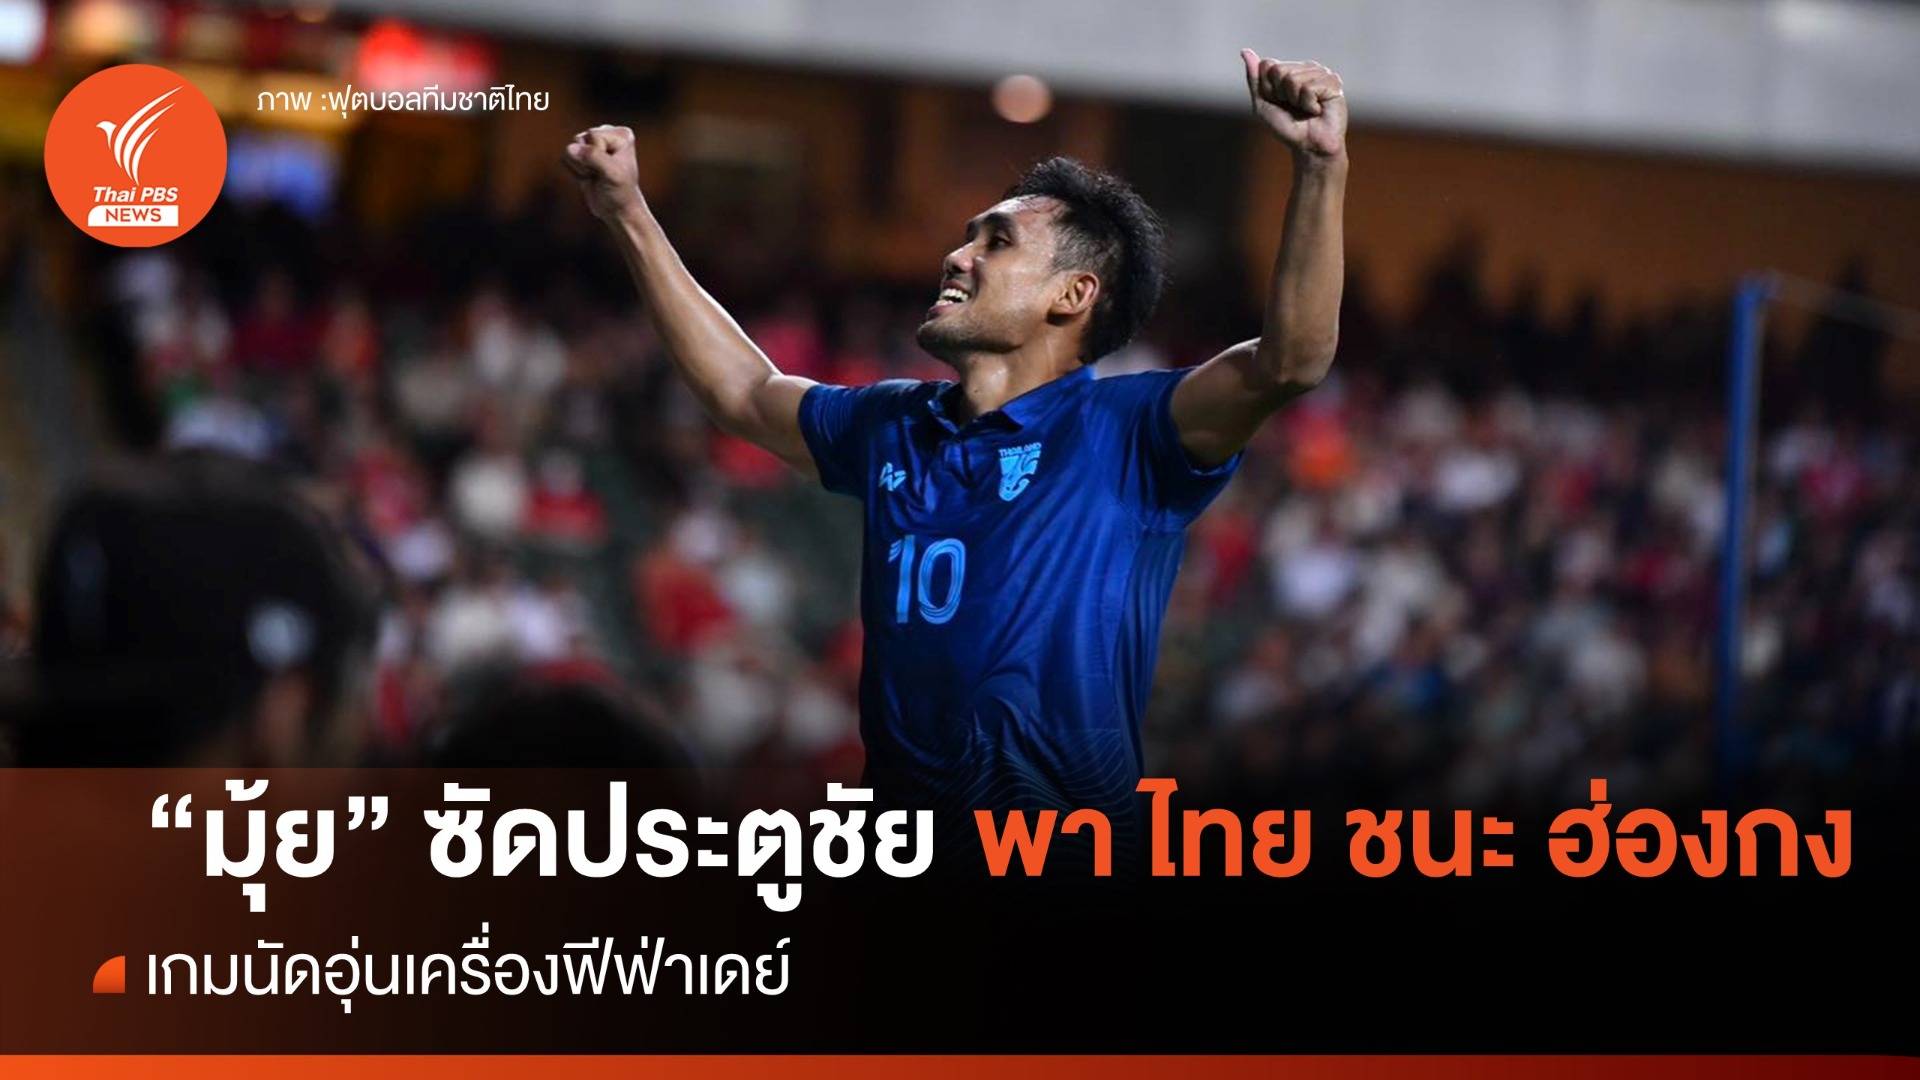 "ธีรศิลป์" ซัดประตูชัย พาไทย เฉือน ฮ่องกง 1-0